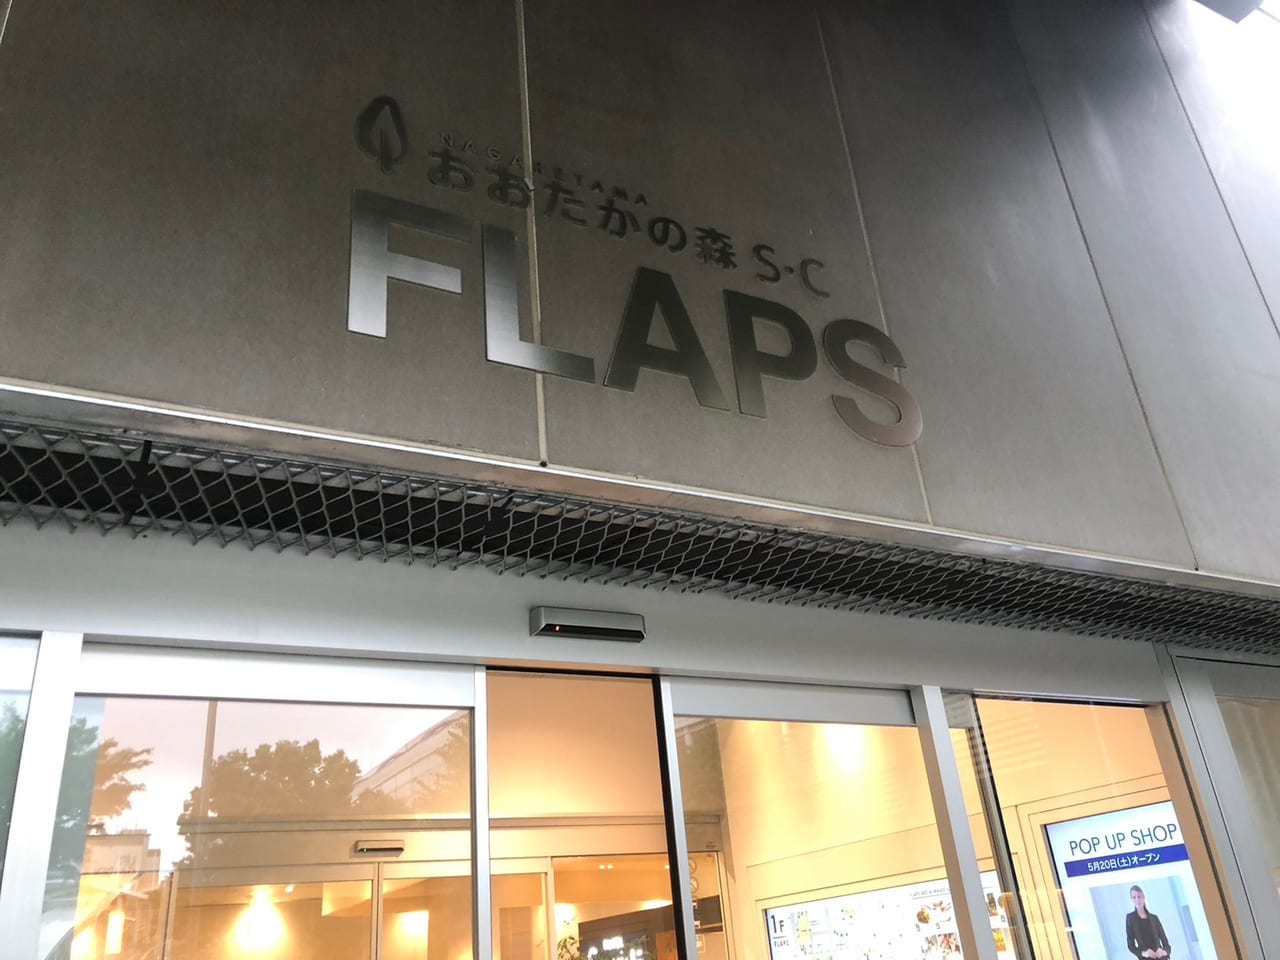 FLAPS